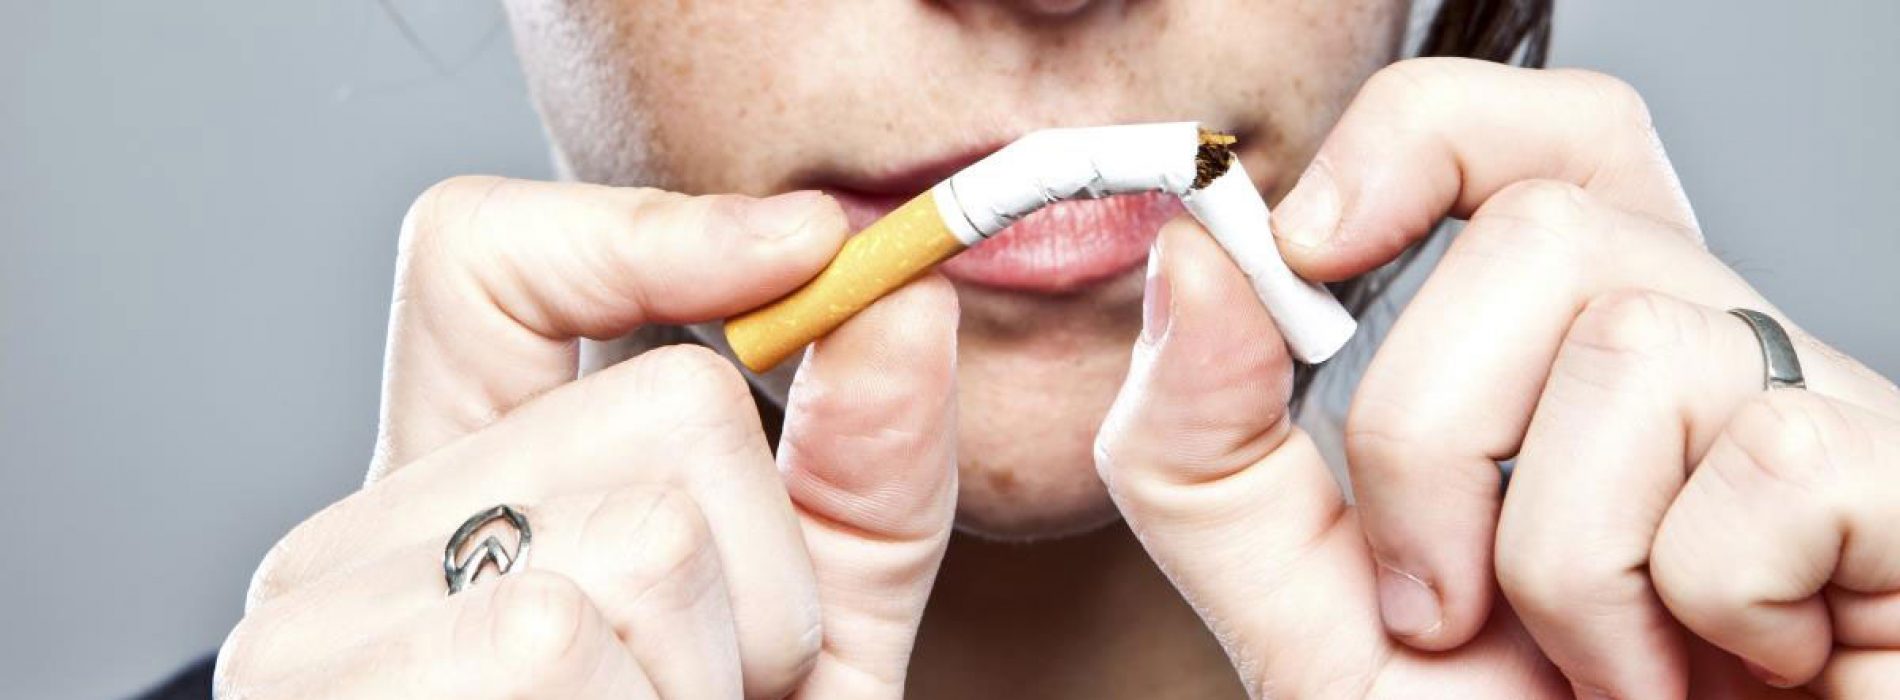 Roken en hypertensie: onderzoek toont aan dat het vermogen van het lichaam om de bloeddruk zelf te corrigeren in gevaar komt door de chronische gewoonte